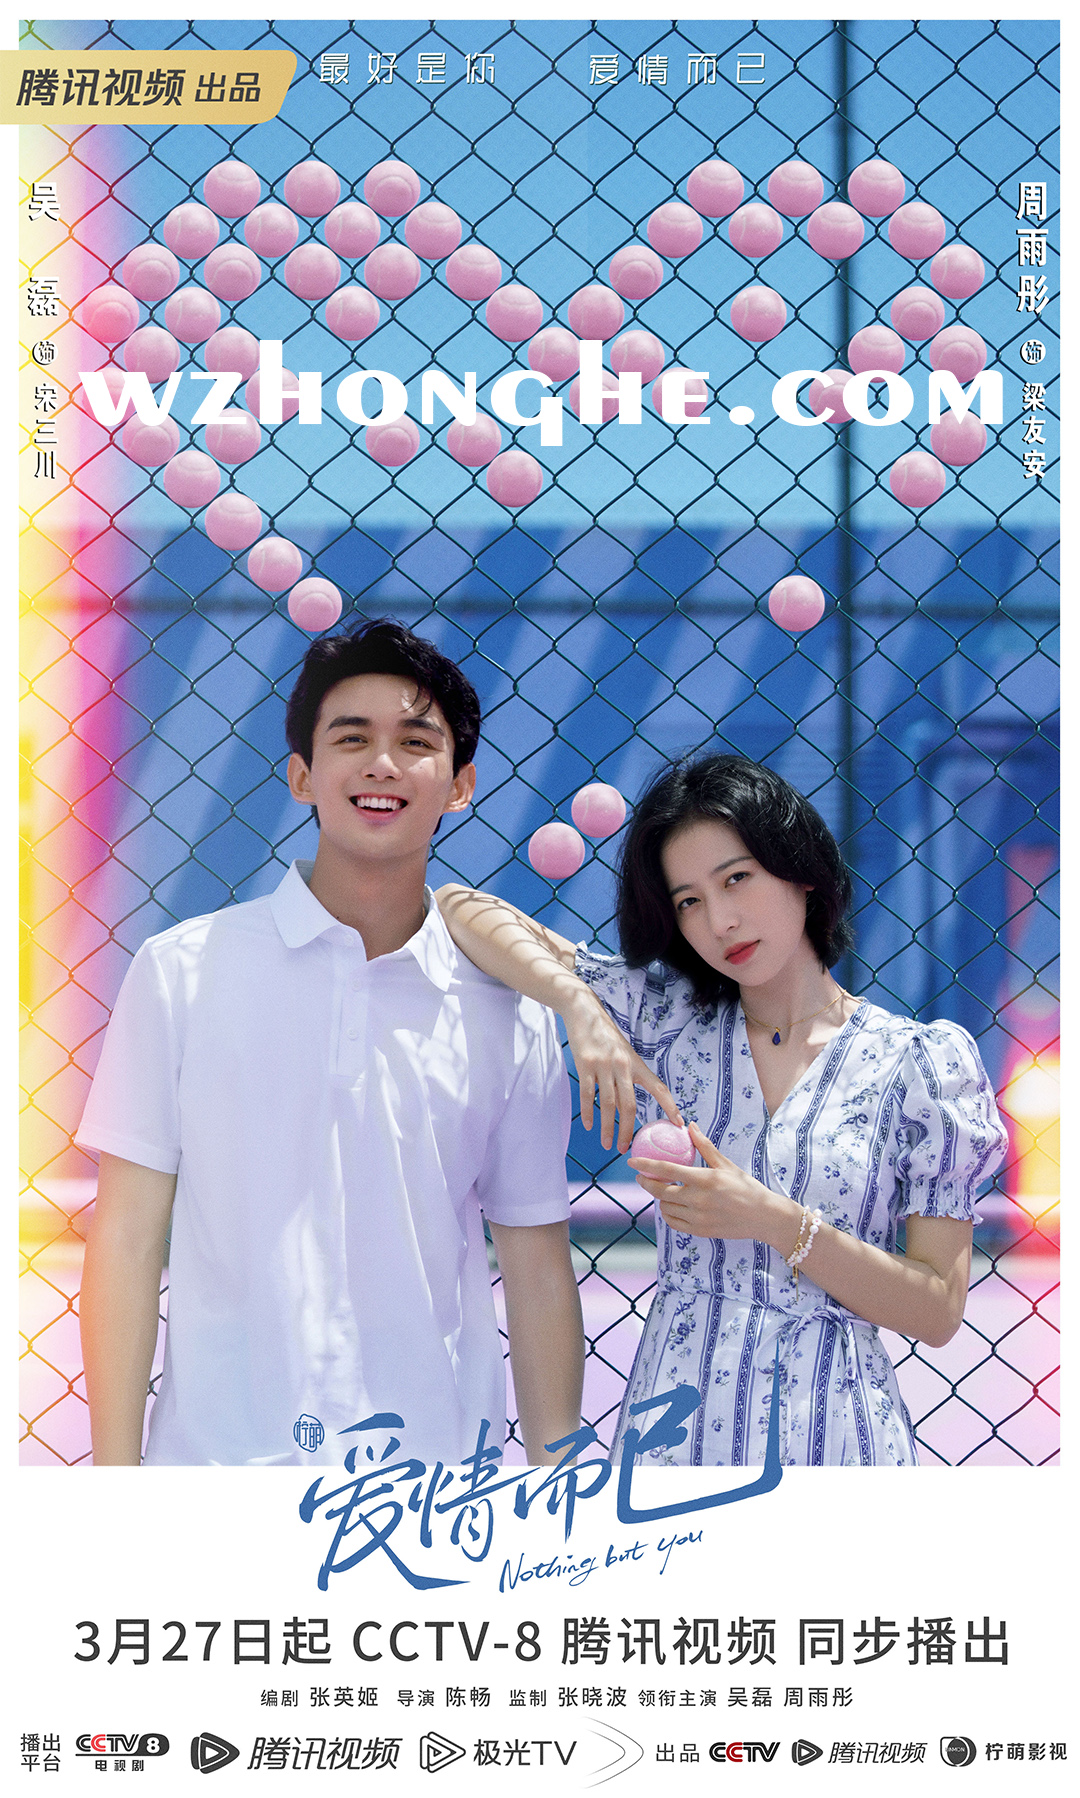 爱情而已 - 无中和wzhonghe.com -1